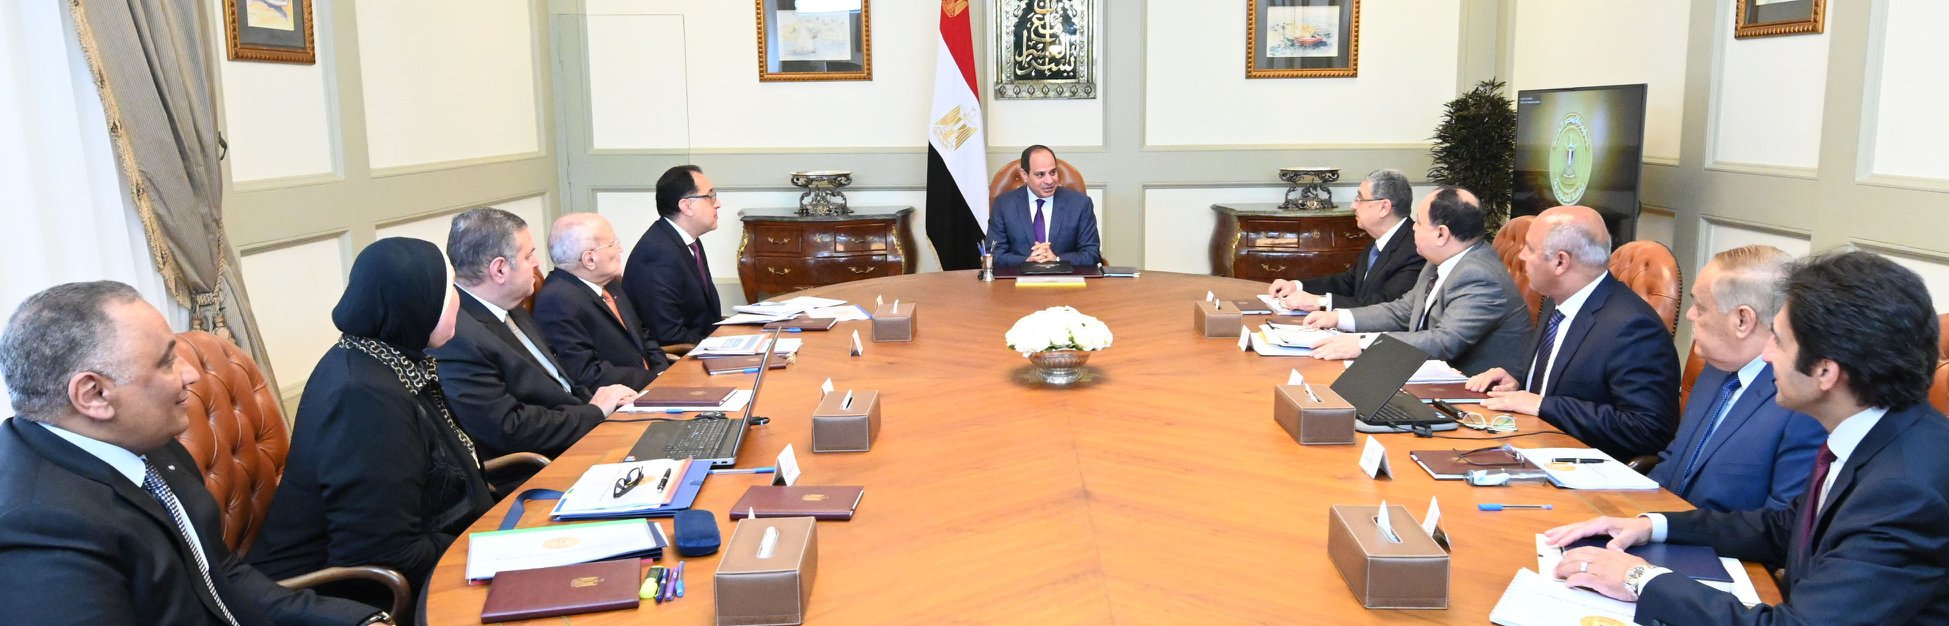   بسام راضى: الرئيس السيسى يوجه بإطلاق استراتيجية صناعة السيارات والصناعات المغذية لها